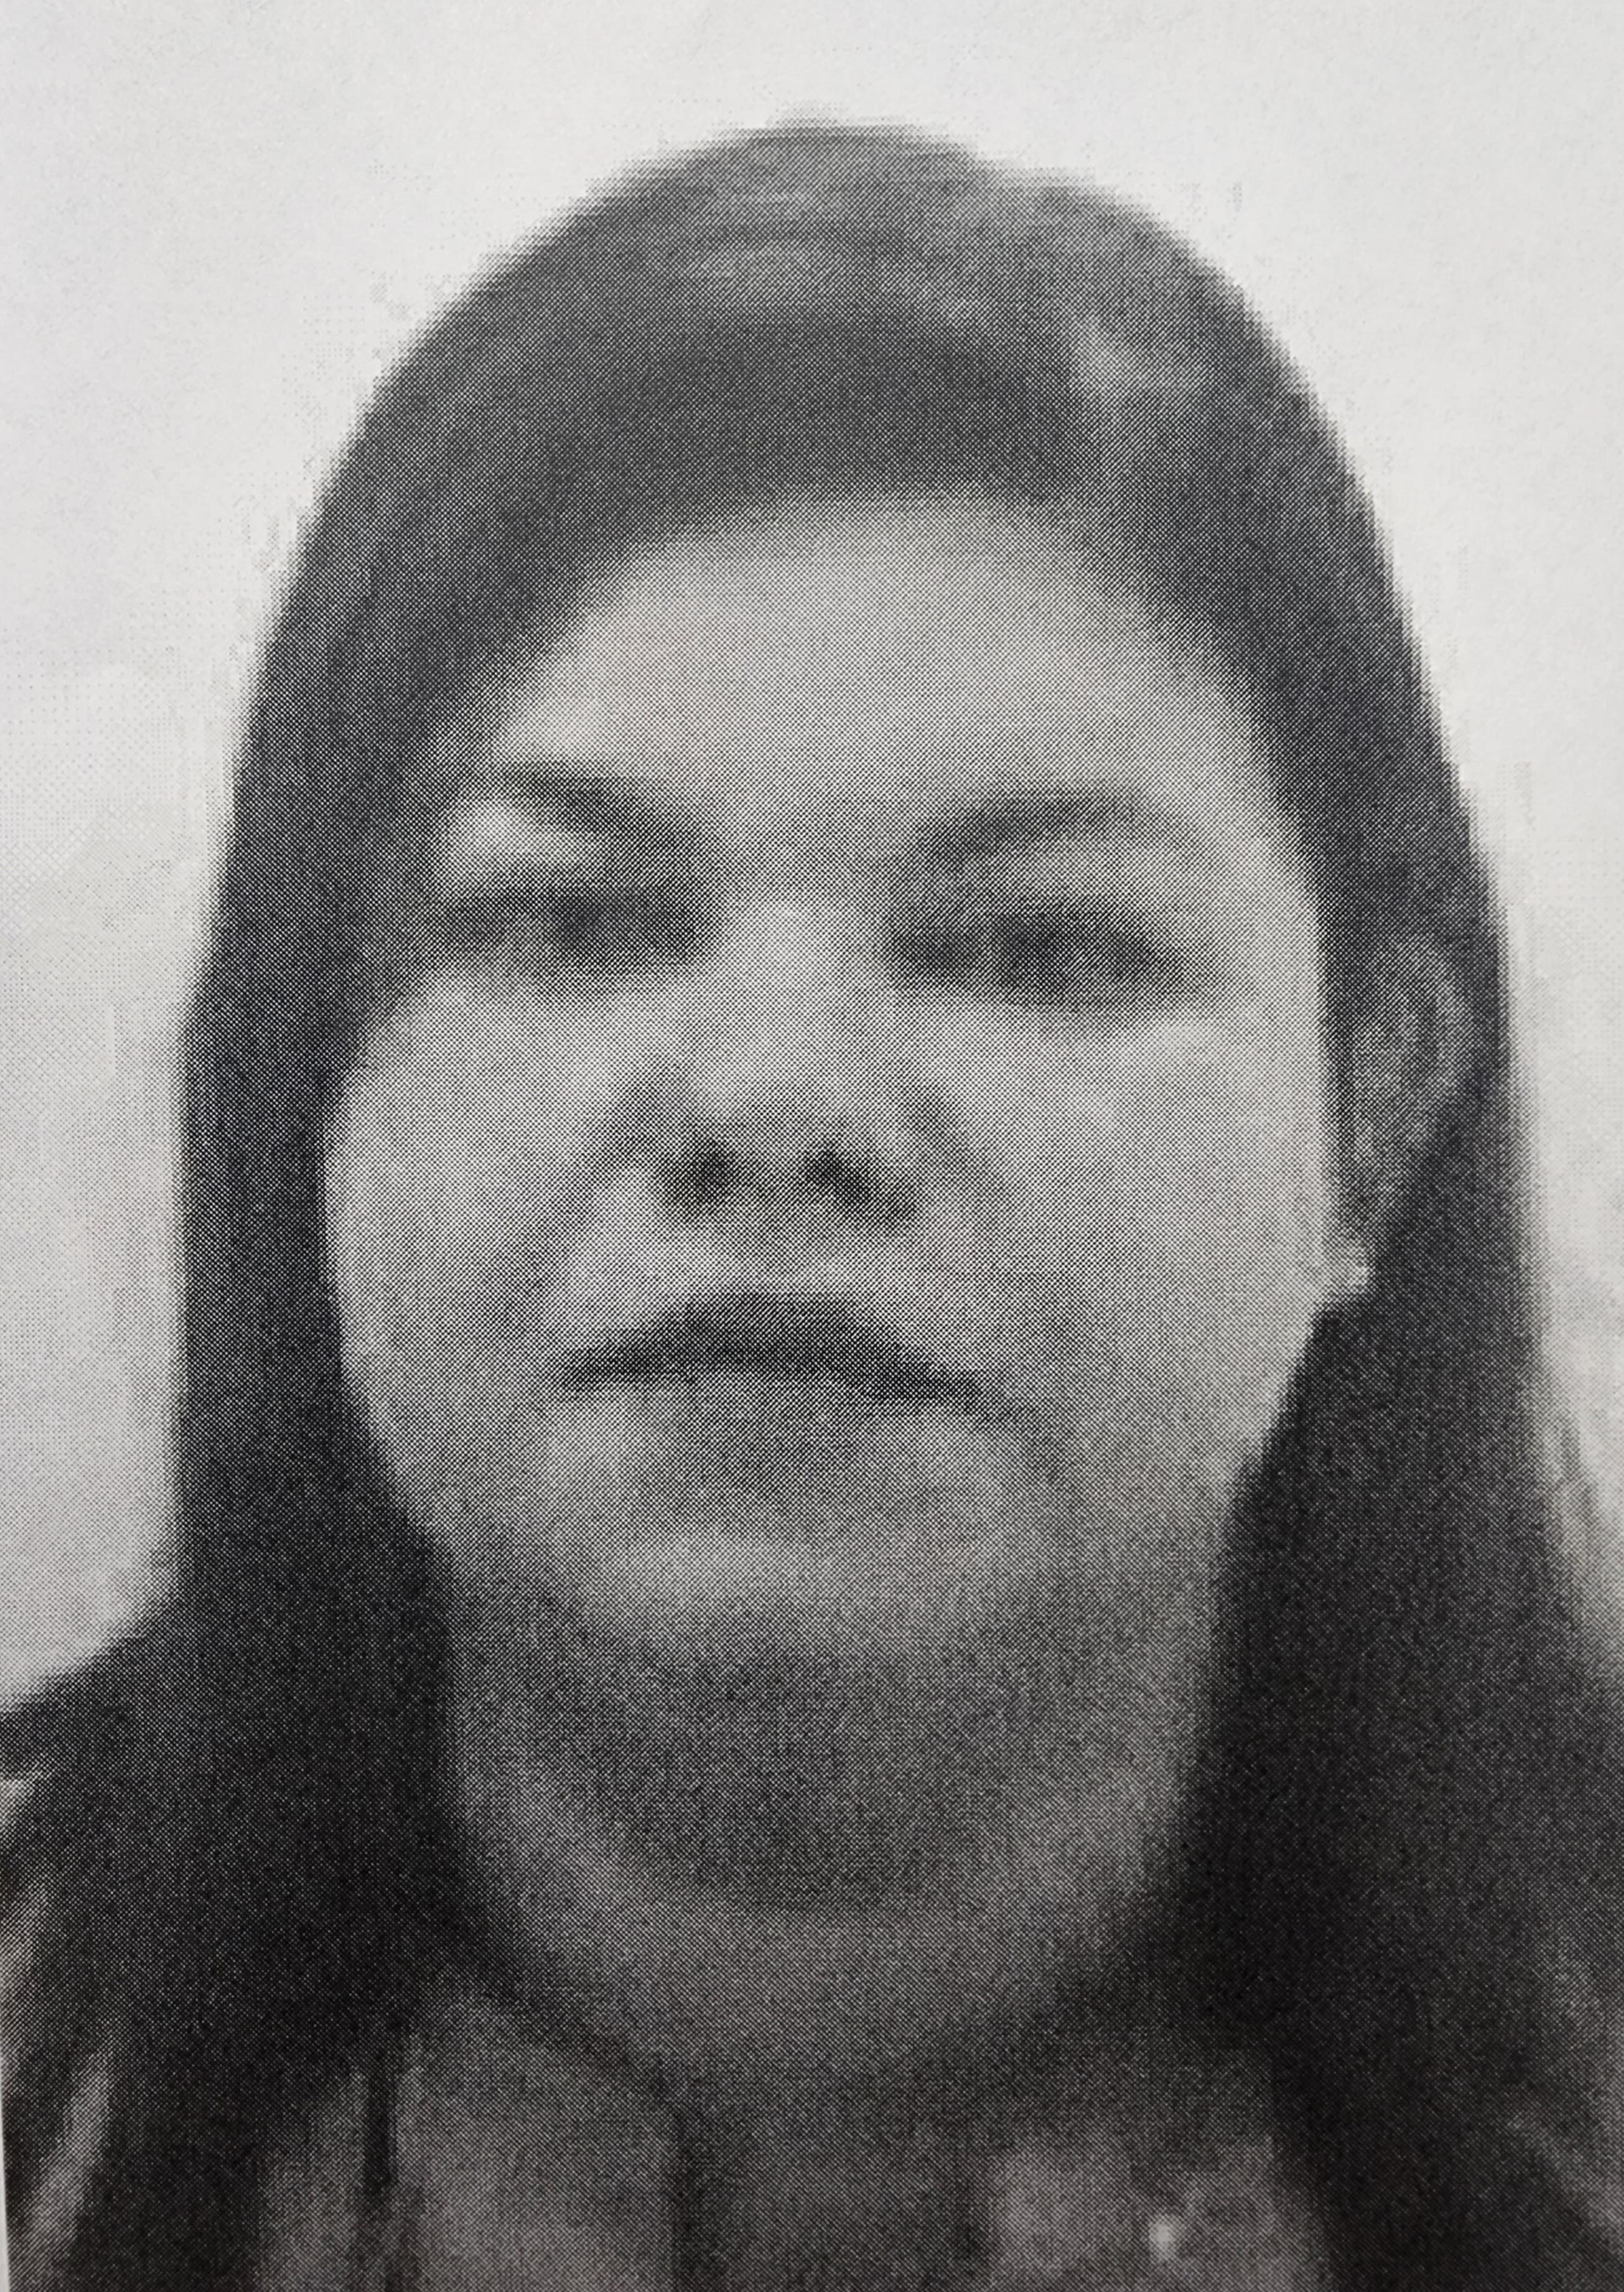 Nilsa Alejandro Irizarry, de 42 años, está acusada por tentativa de asesinato, maltrato a persona de edad avanzada mediante amenaza y posesión y traspaso de documentos falsos.